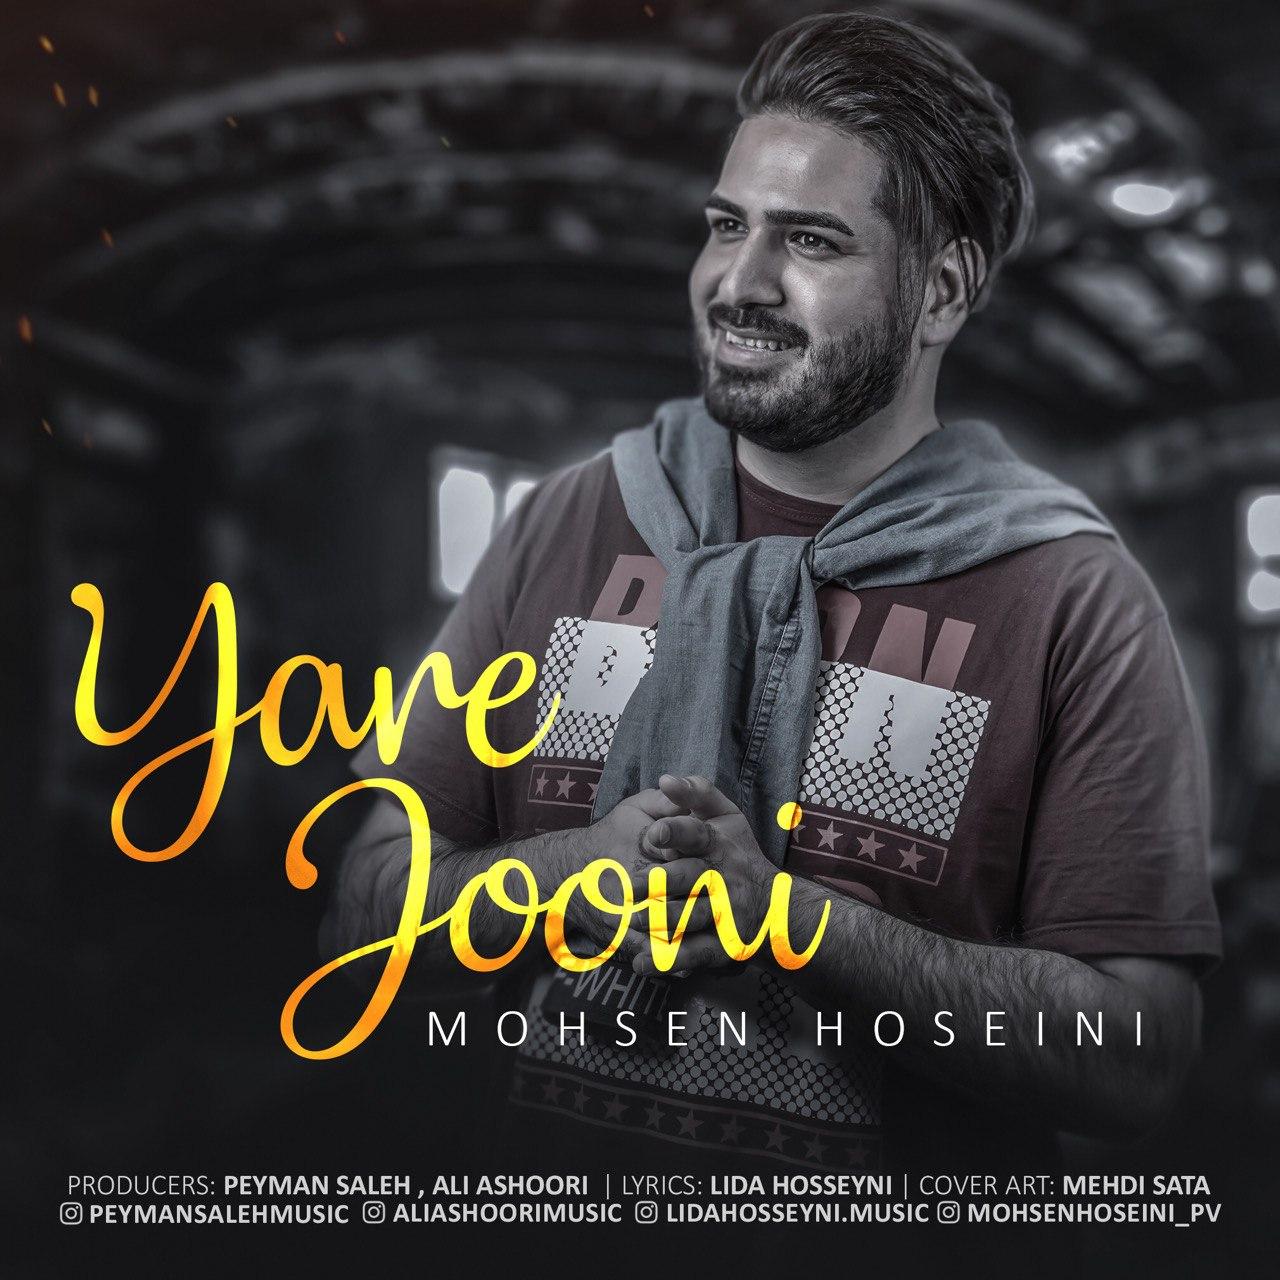 Mohsen Hoseini – Yare jooni